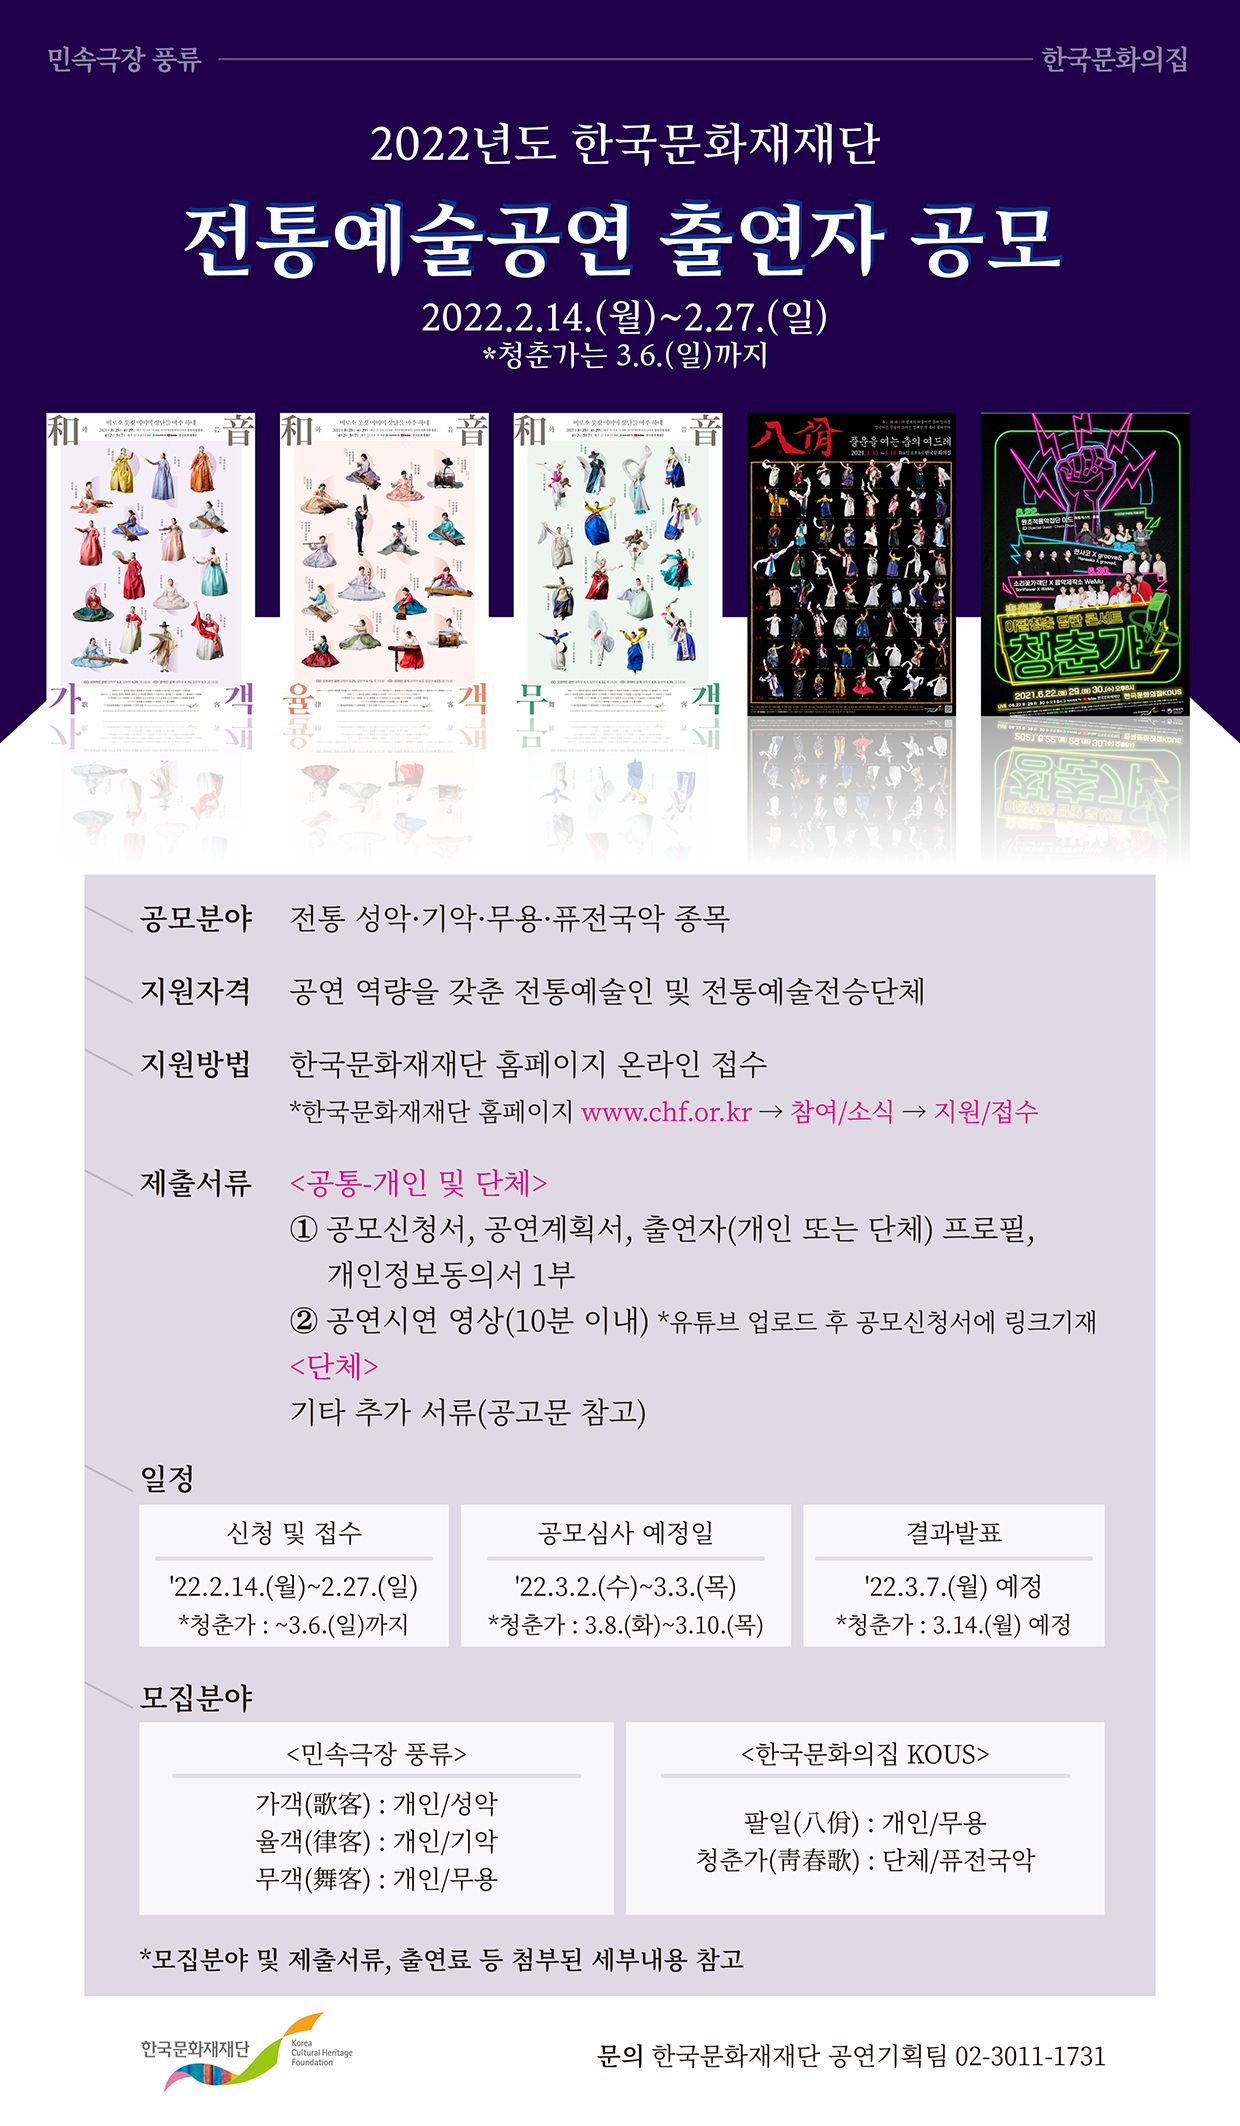 2022년도 한국문화재재단 전통예술공연 출연자 공모 포스터 (자세한 내용 하단 참조)